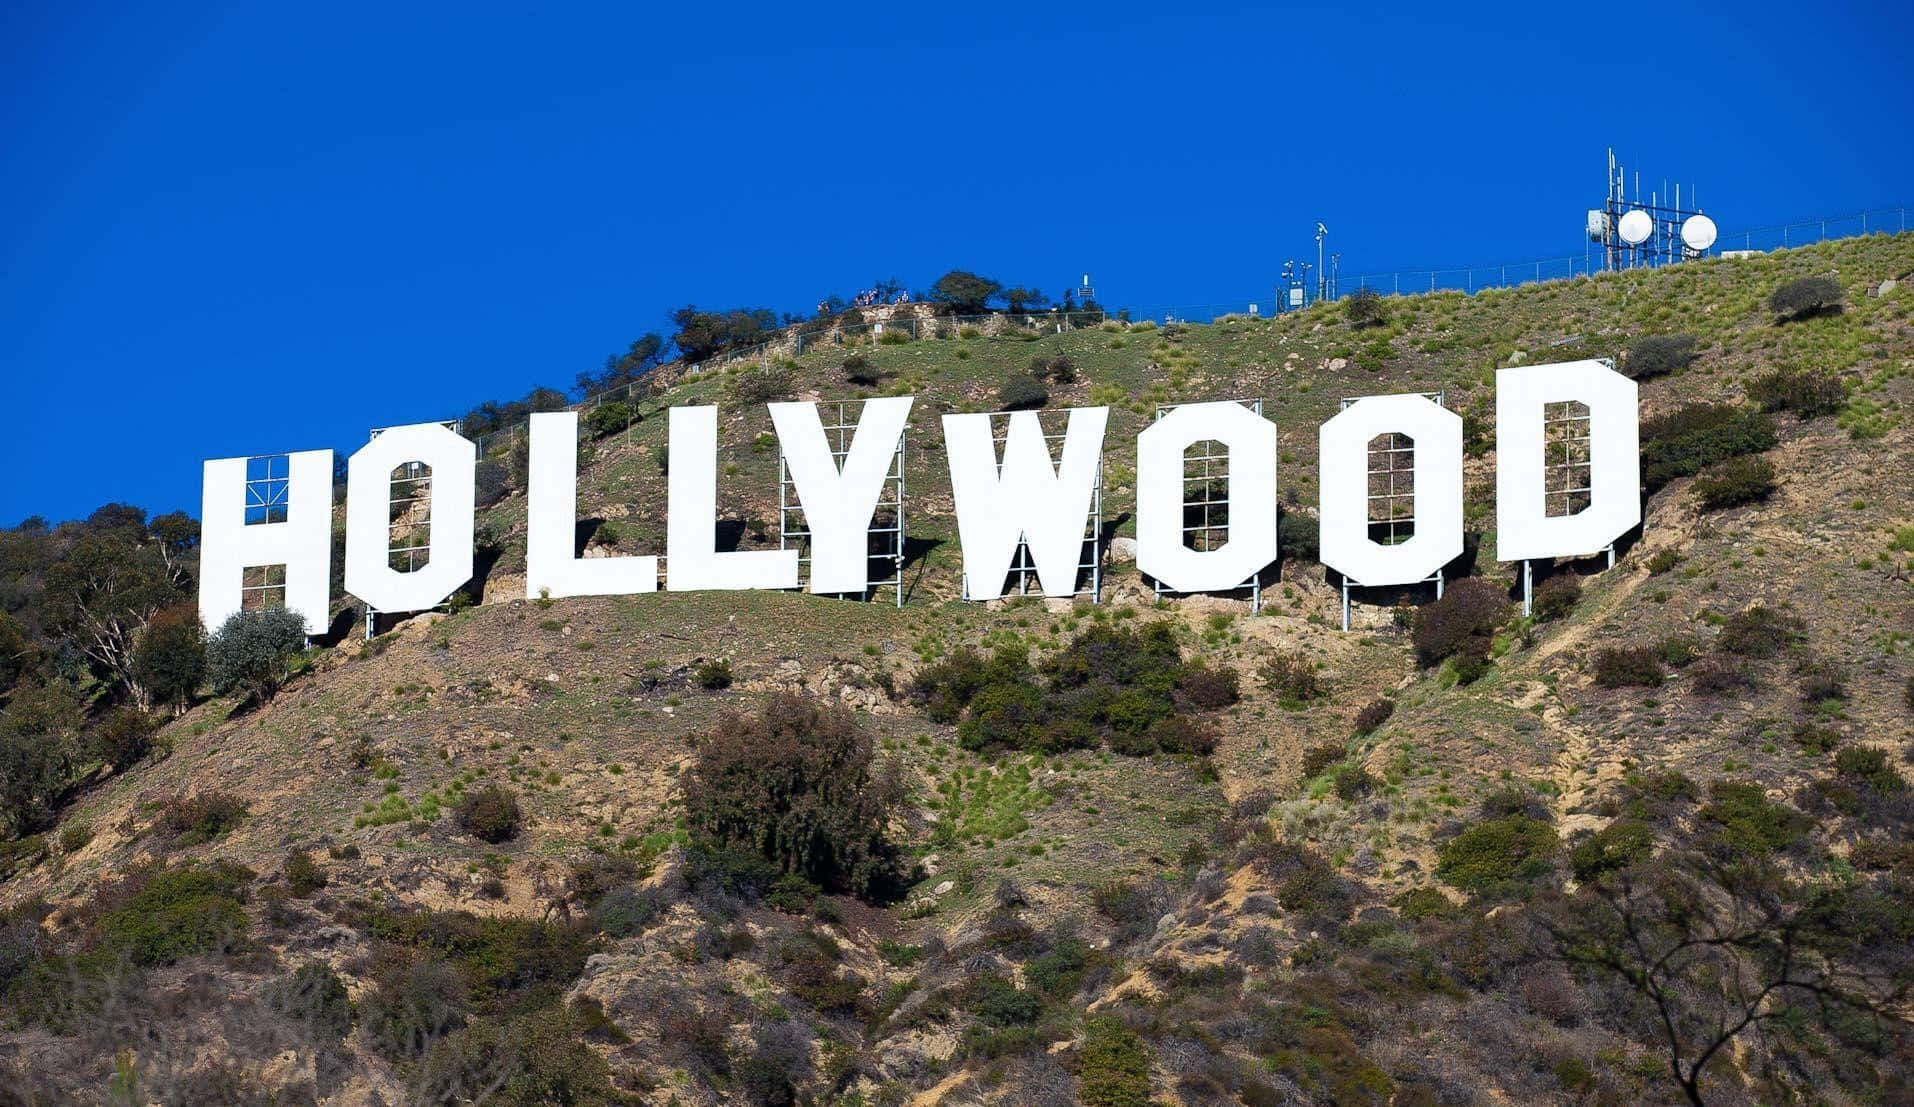 Hintergrundbildmit Hollywood-schild Auf Einem Berg.